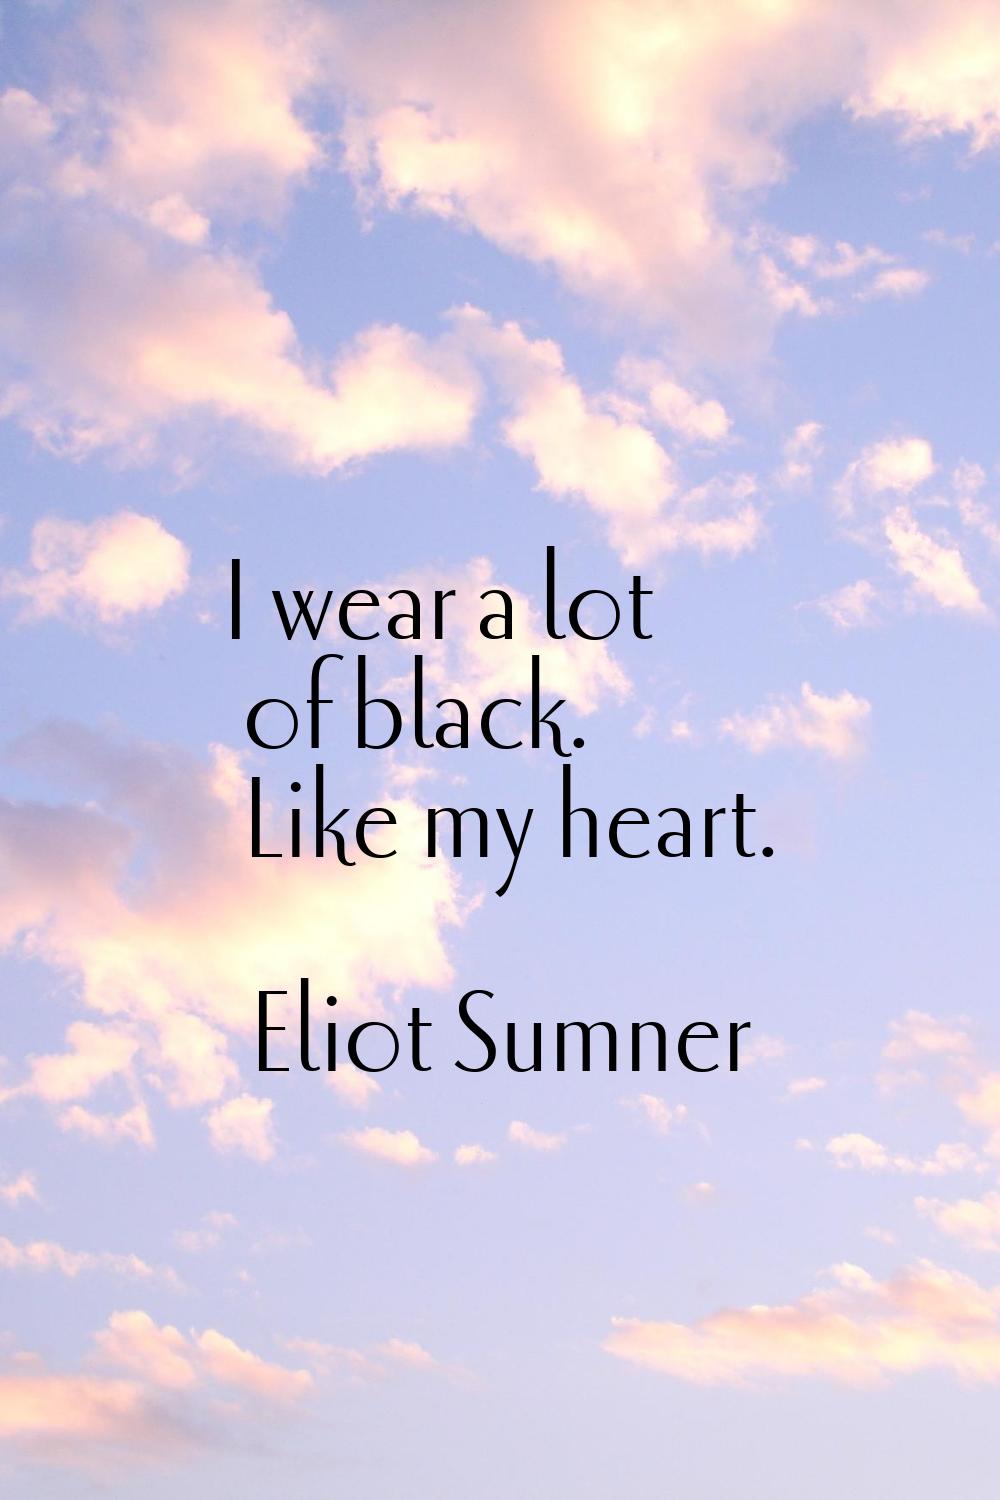 I wear a lot of black. Like my heart.